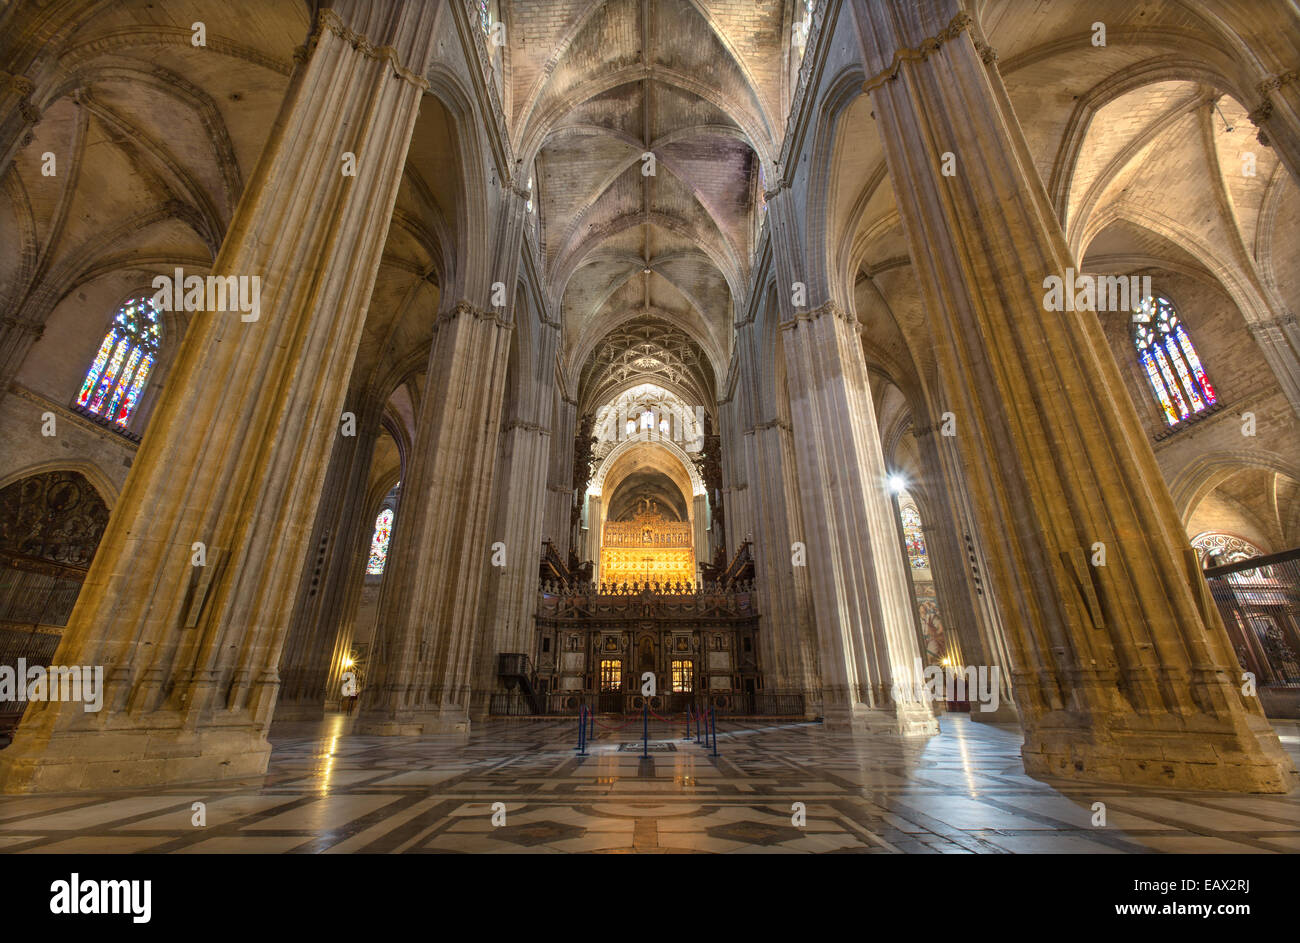 Sevilla, España - 29 de octubre de 2014: Interior de la Catedral de Santa María de la Sede. Foto de stock